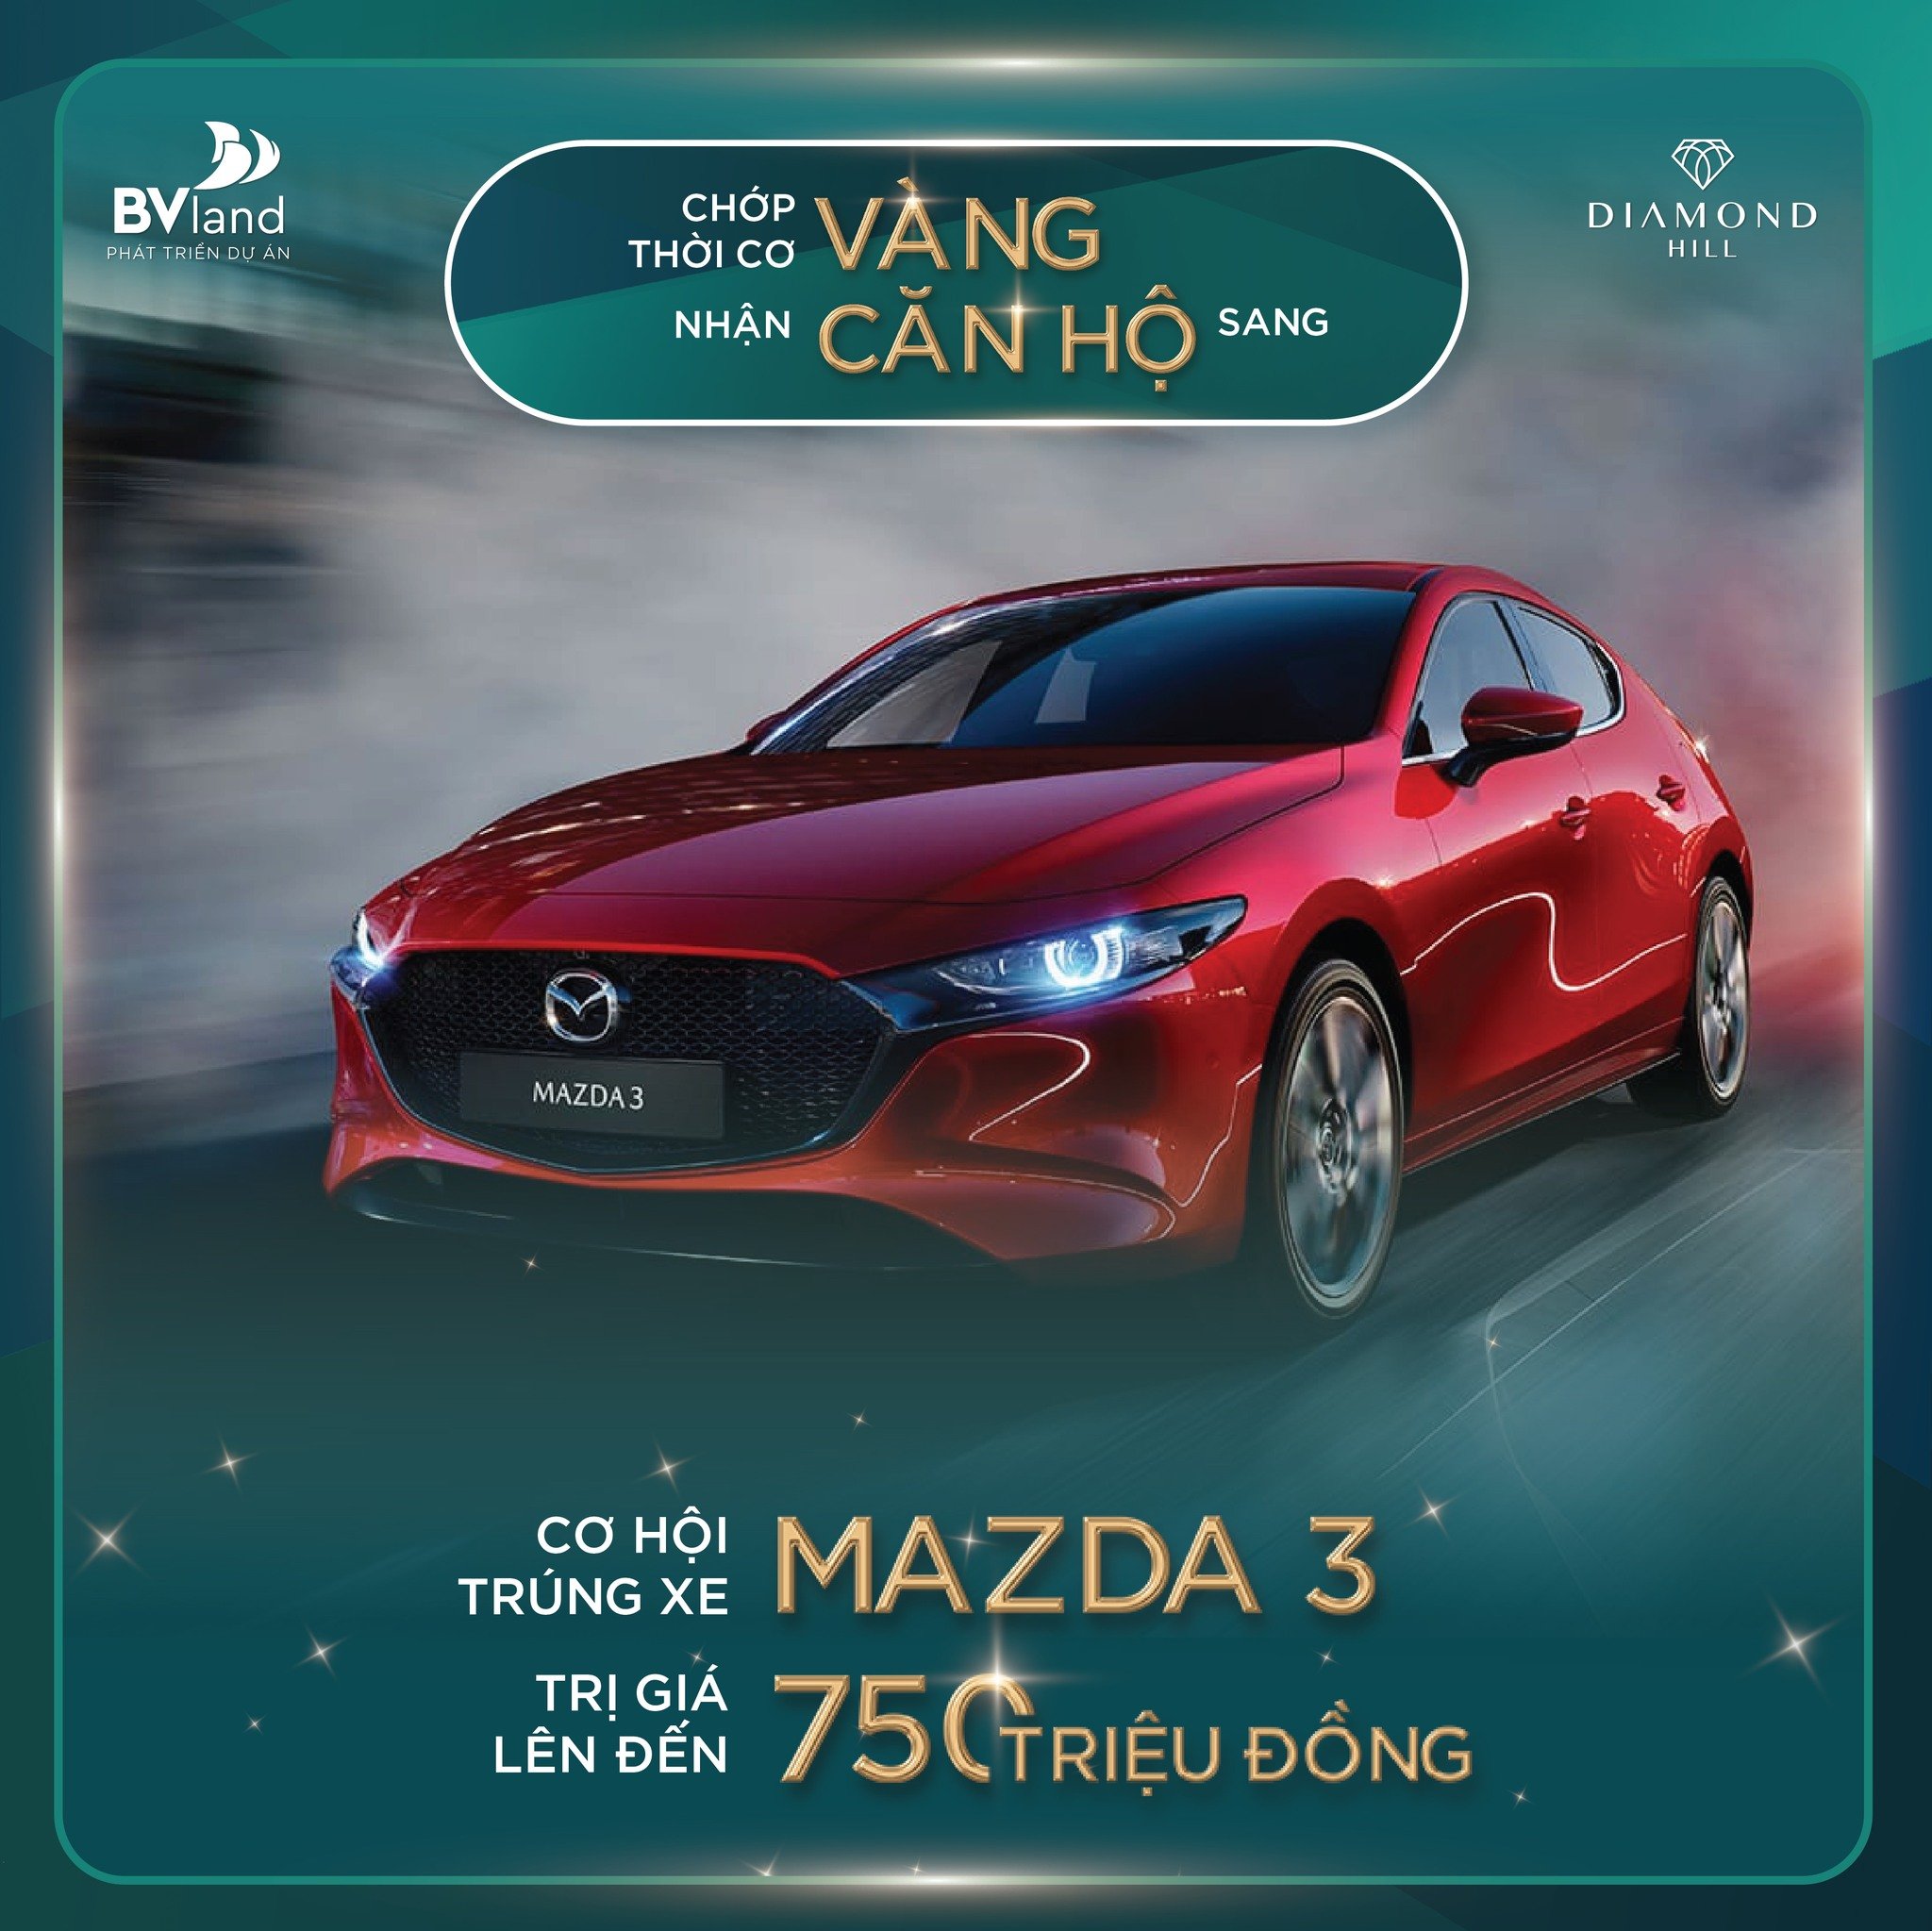 Cơ hội trúng xem Mazda 3 trị giá 750 triệu khi mua nhà Diamond Hill - TP Bắc Giang